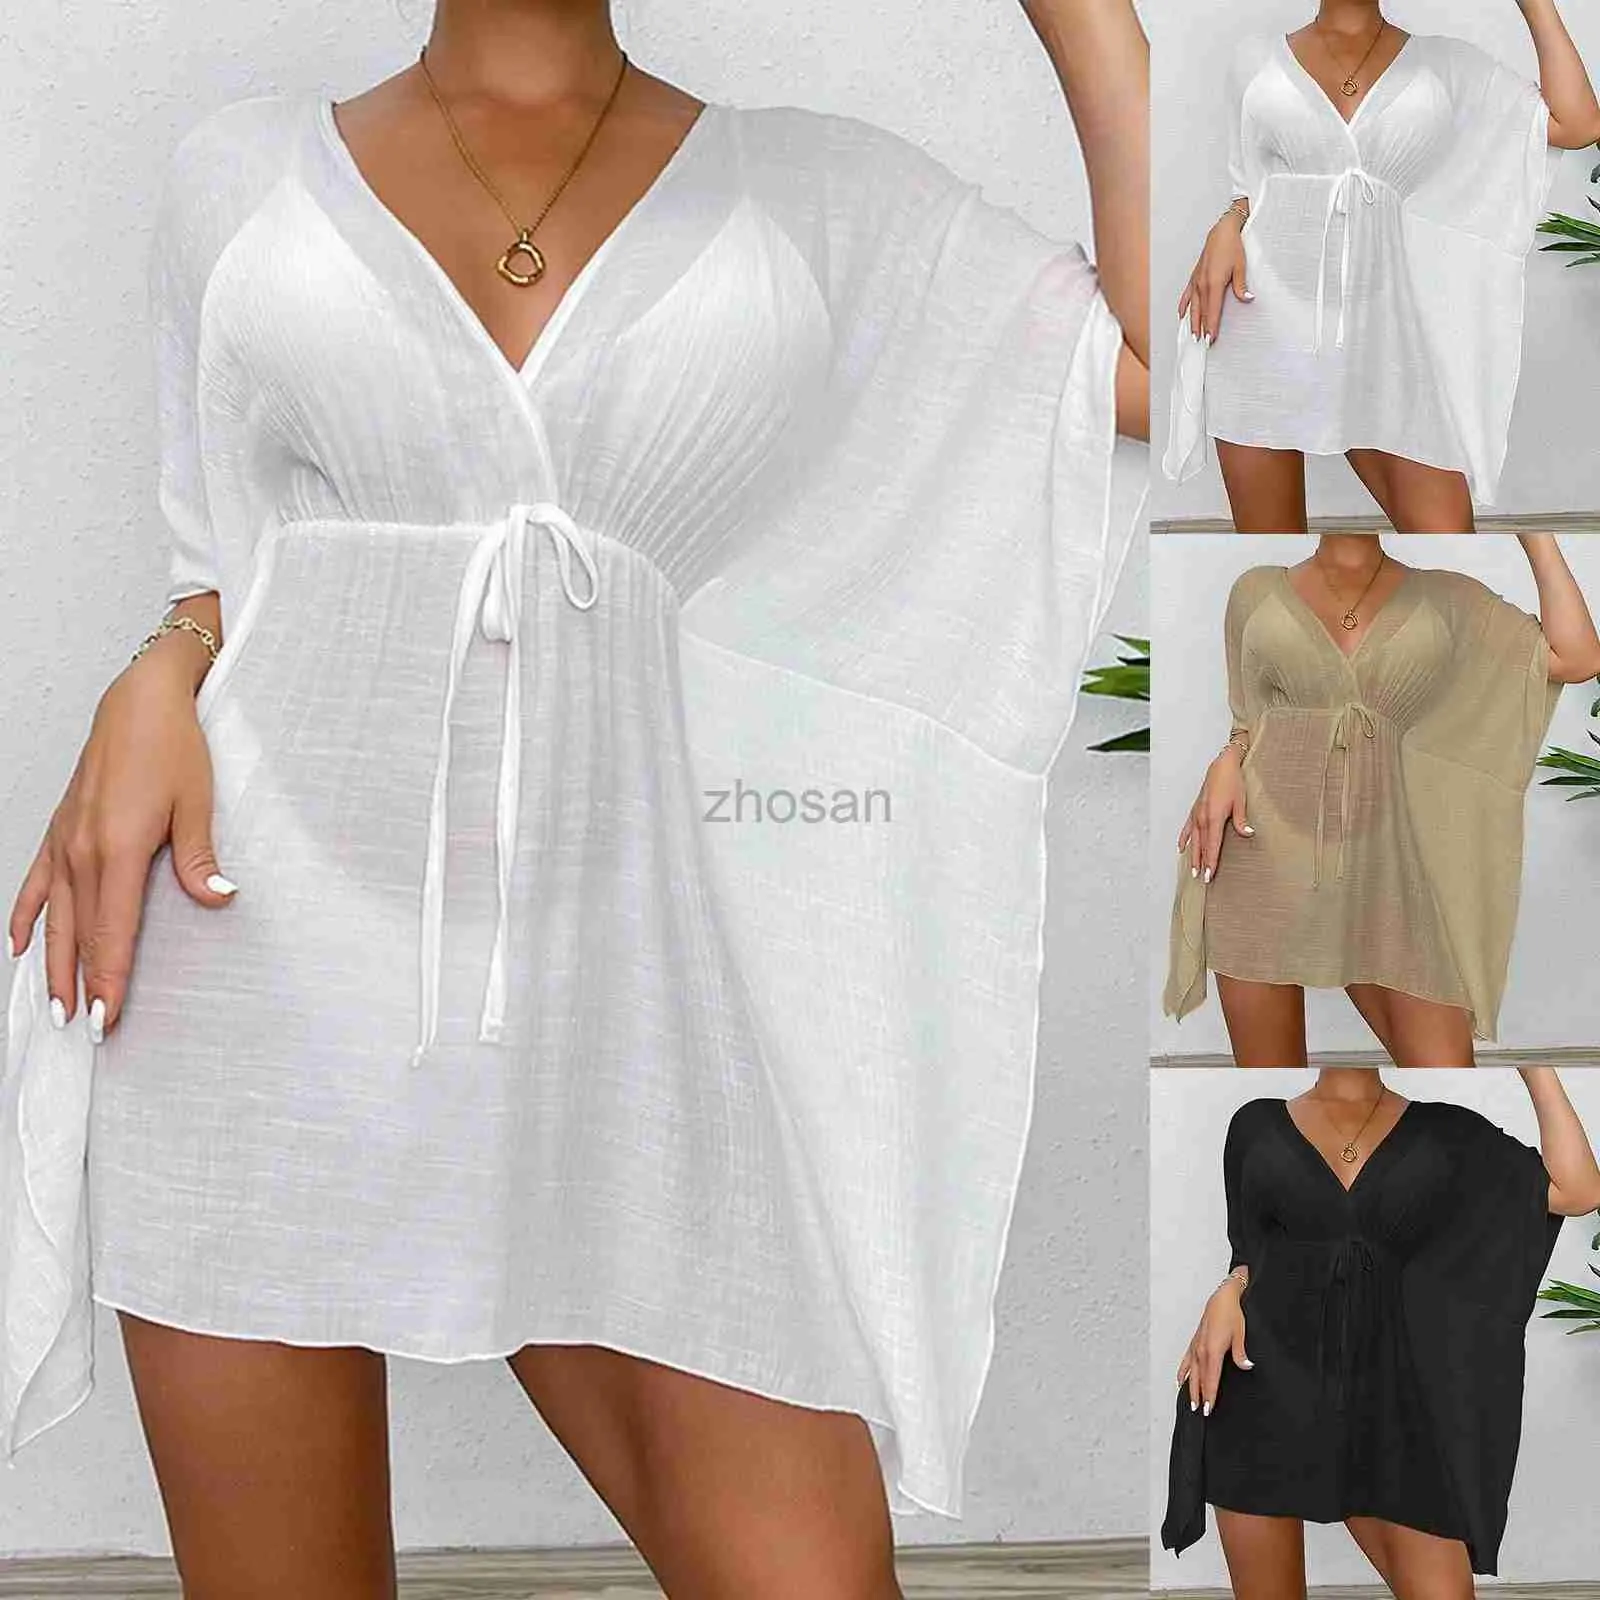 Femmes Place Wear Wear Sexy V-Neck Summer Beach Robe White Cotton TUNIC FEMMES VOIE BIKINI COPIRES DE BAINS SARON